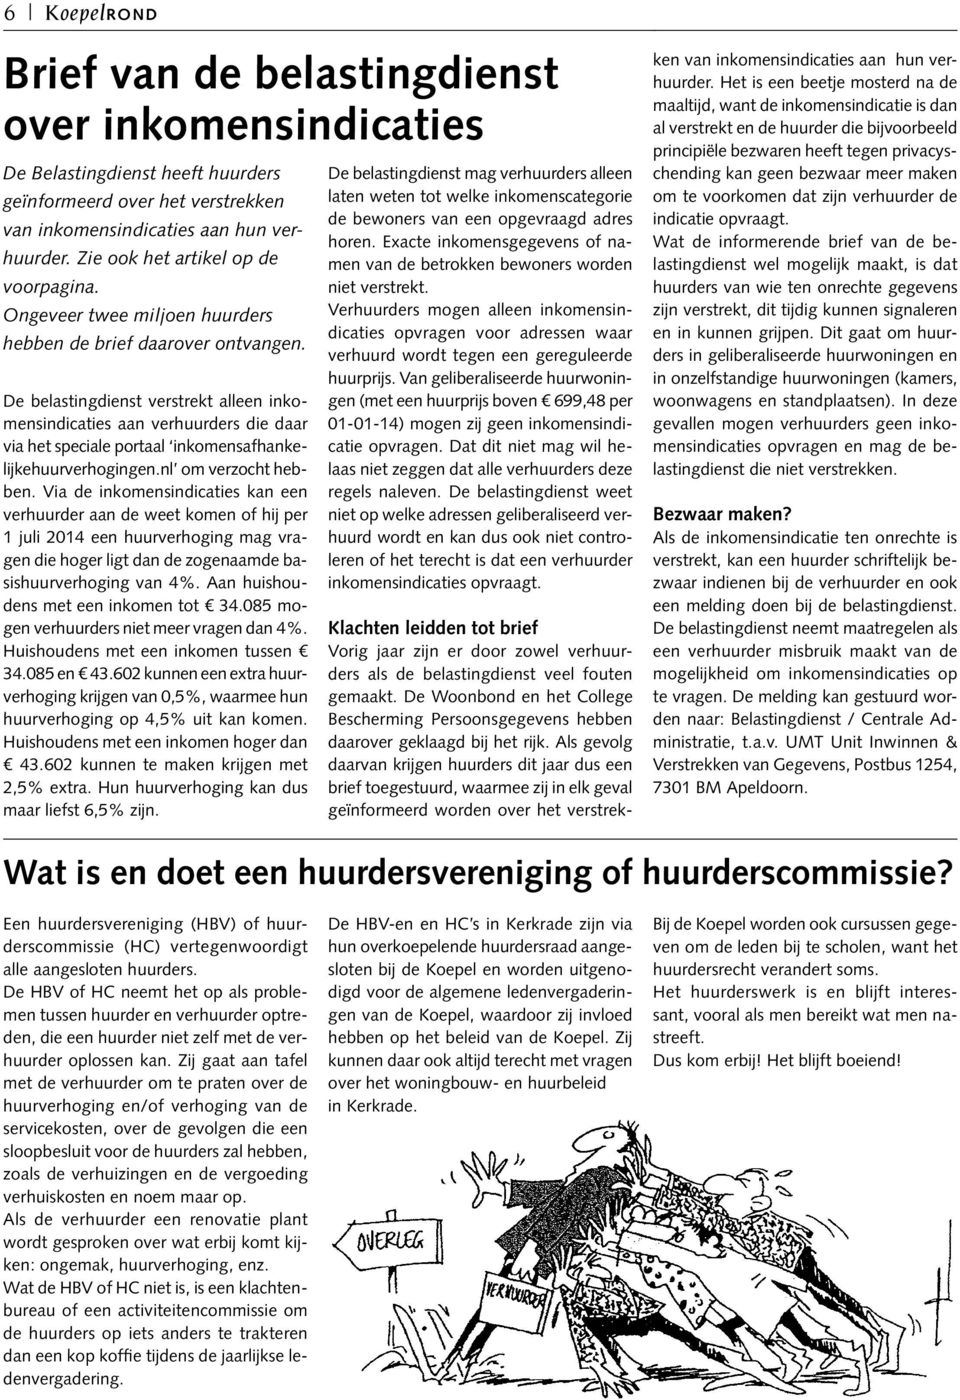 De belastingdienst verstrekt alleen inkomensindicaties aan verhuurders die daar via het speciale portaal inkomensafhankelijkehuurverhogingen.nl om verzocht hebben.